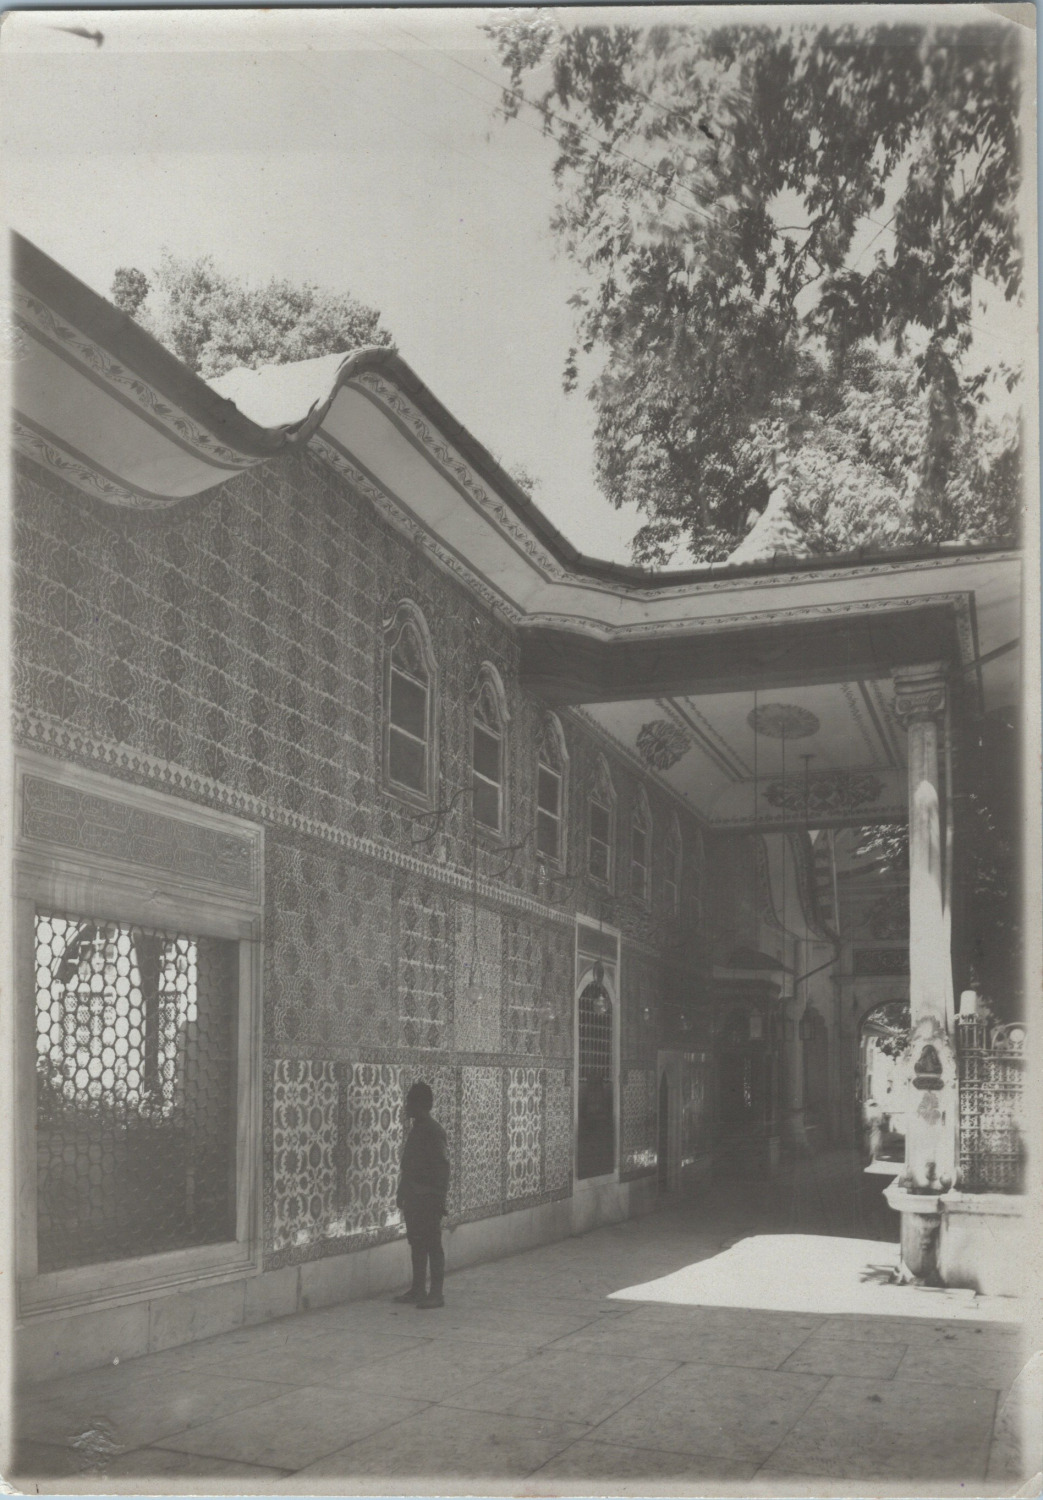 Constantinople, Eyoub, Mosque Interior, Vintage Print, 1919 Come Print